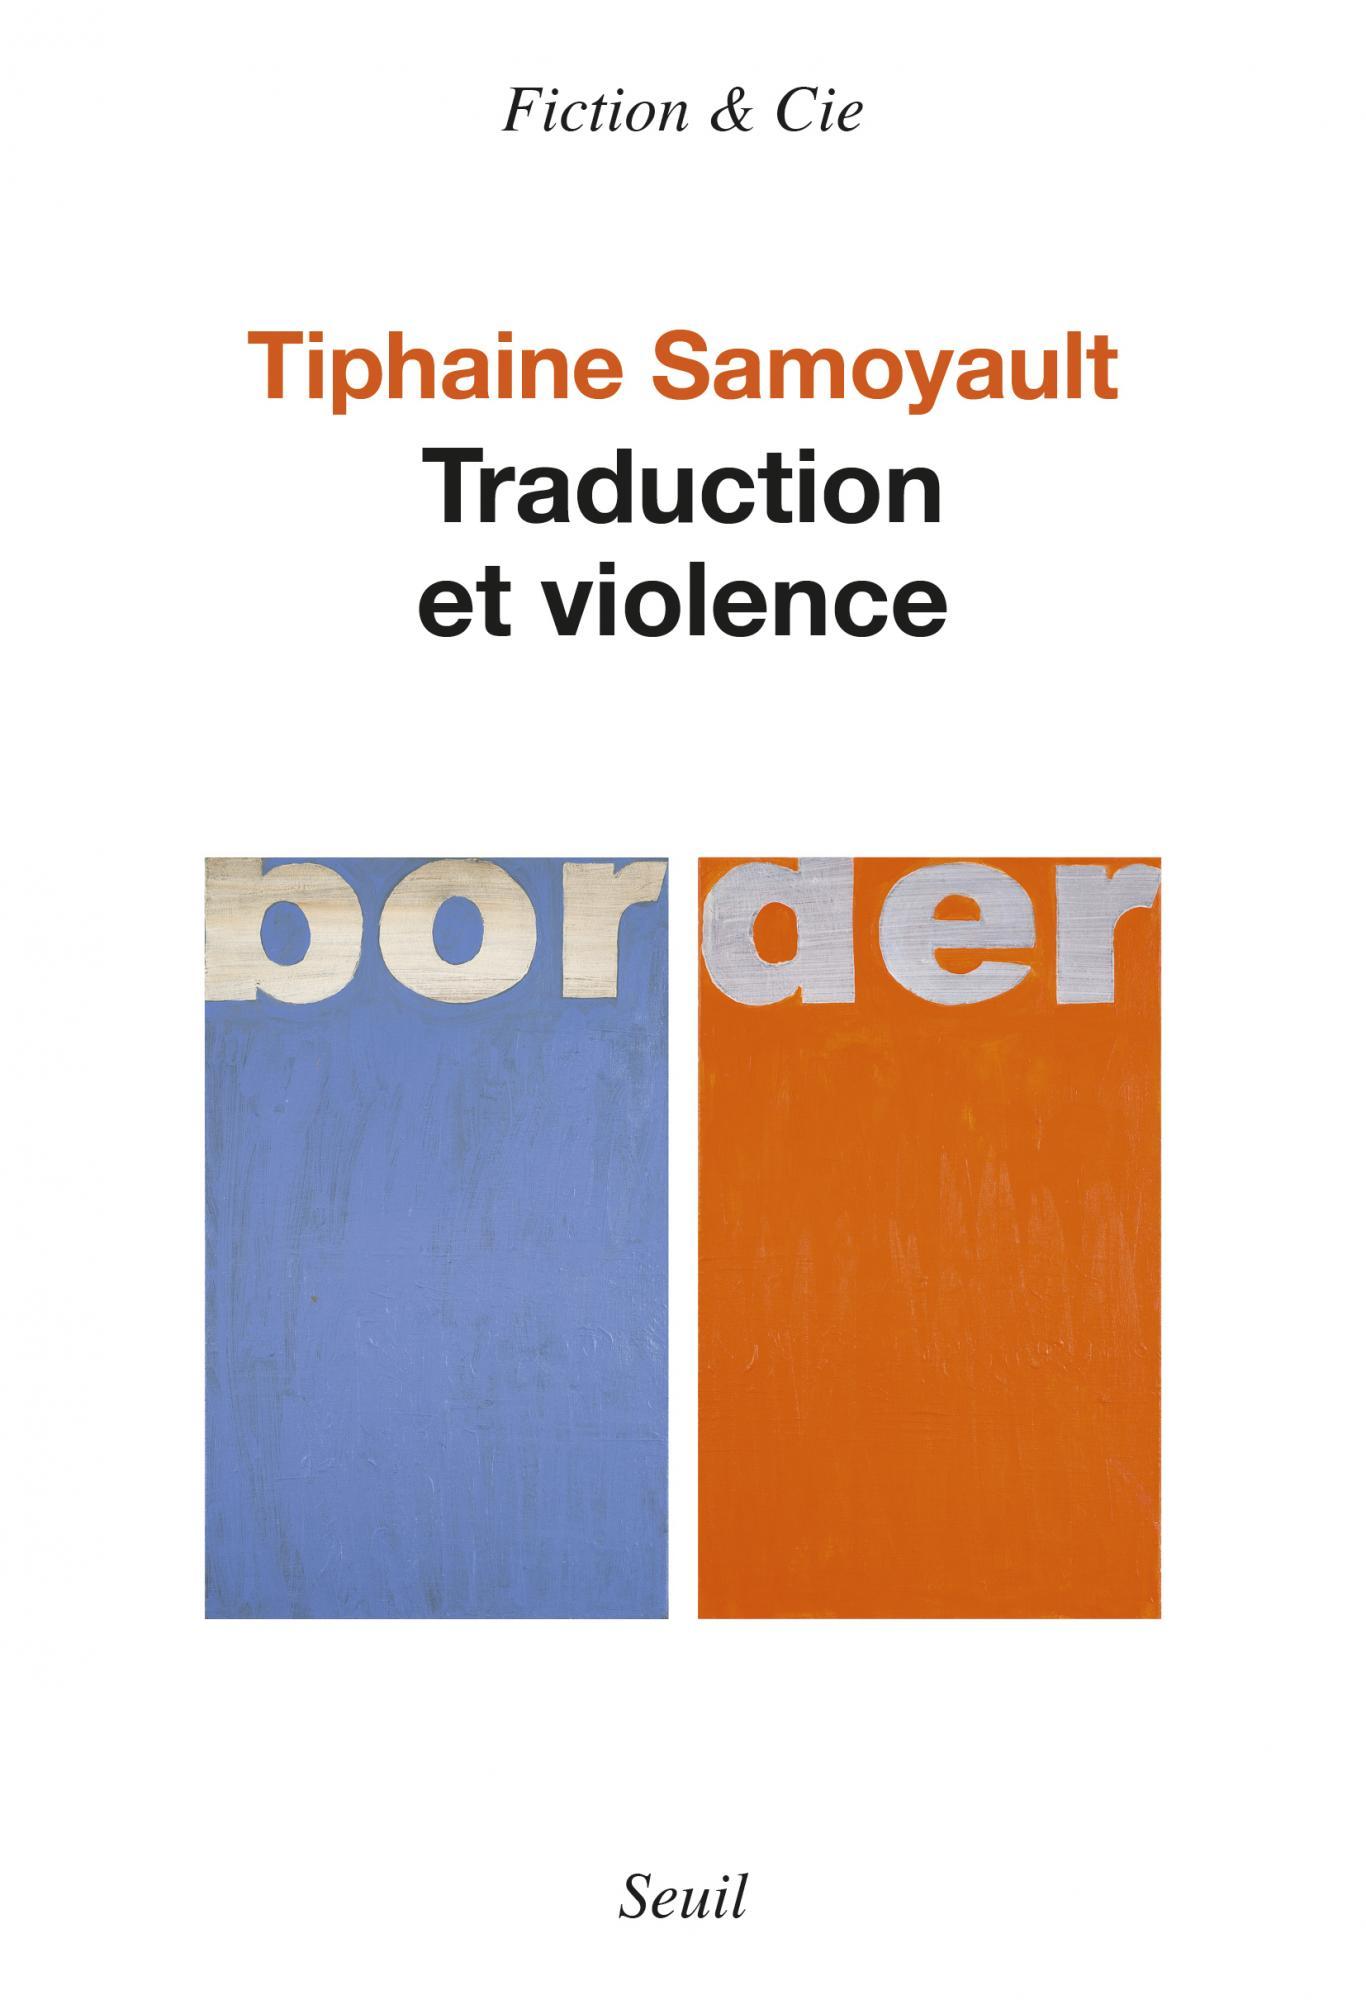 La couverture du livre "Traduction et violence" de Tiphaine Samoyault. [Editions du Seuil]